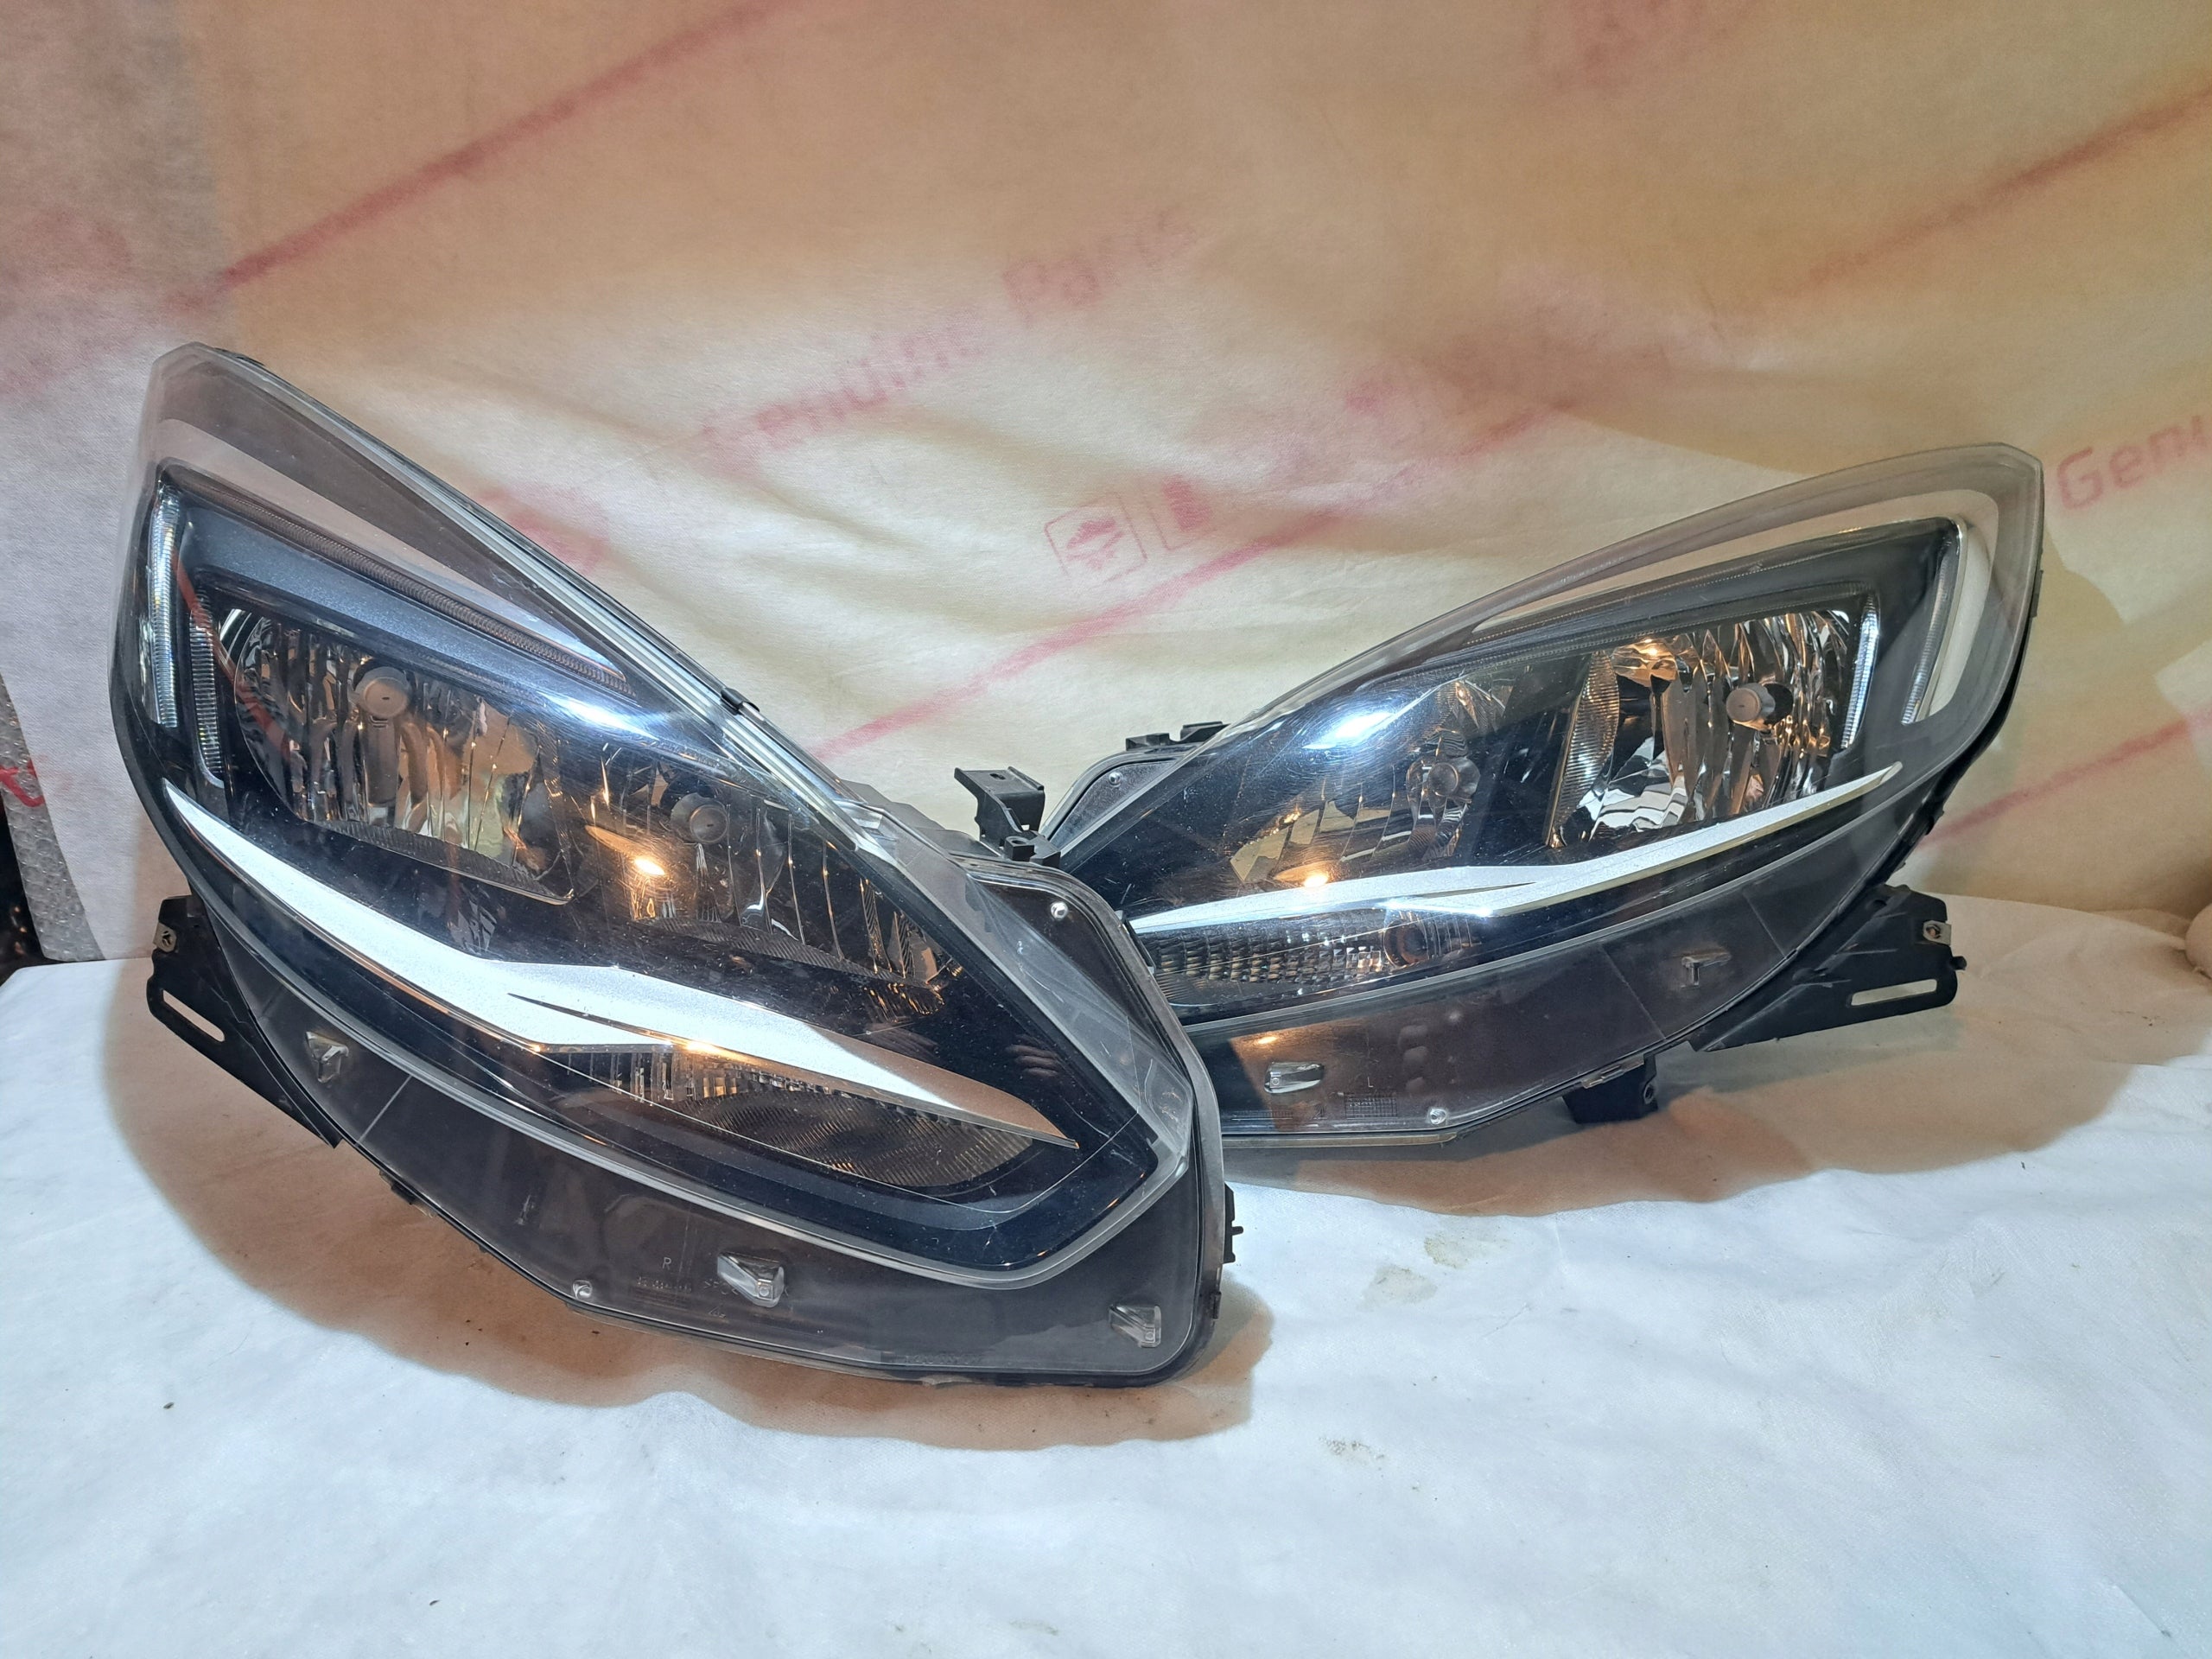 Frontscheinwerfer Opel Zafira Facelift Led Links Original Scheinwerfer Headlight